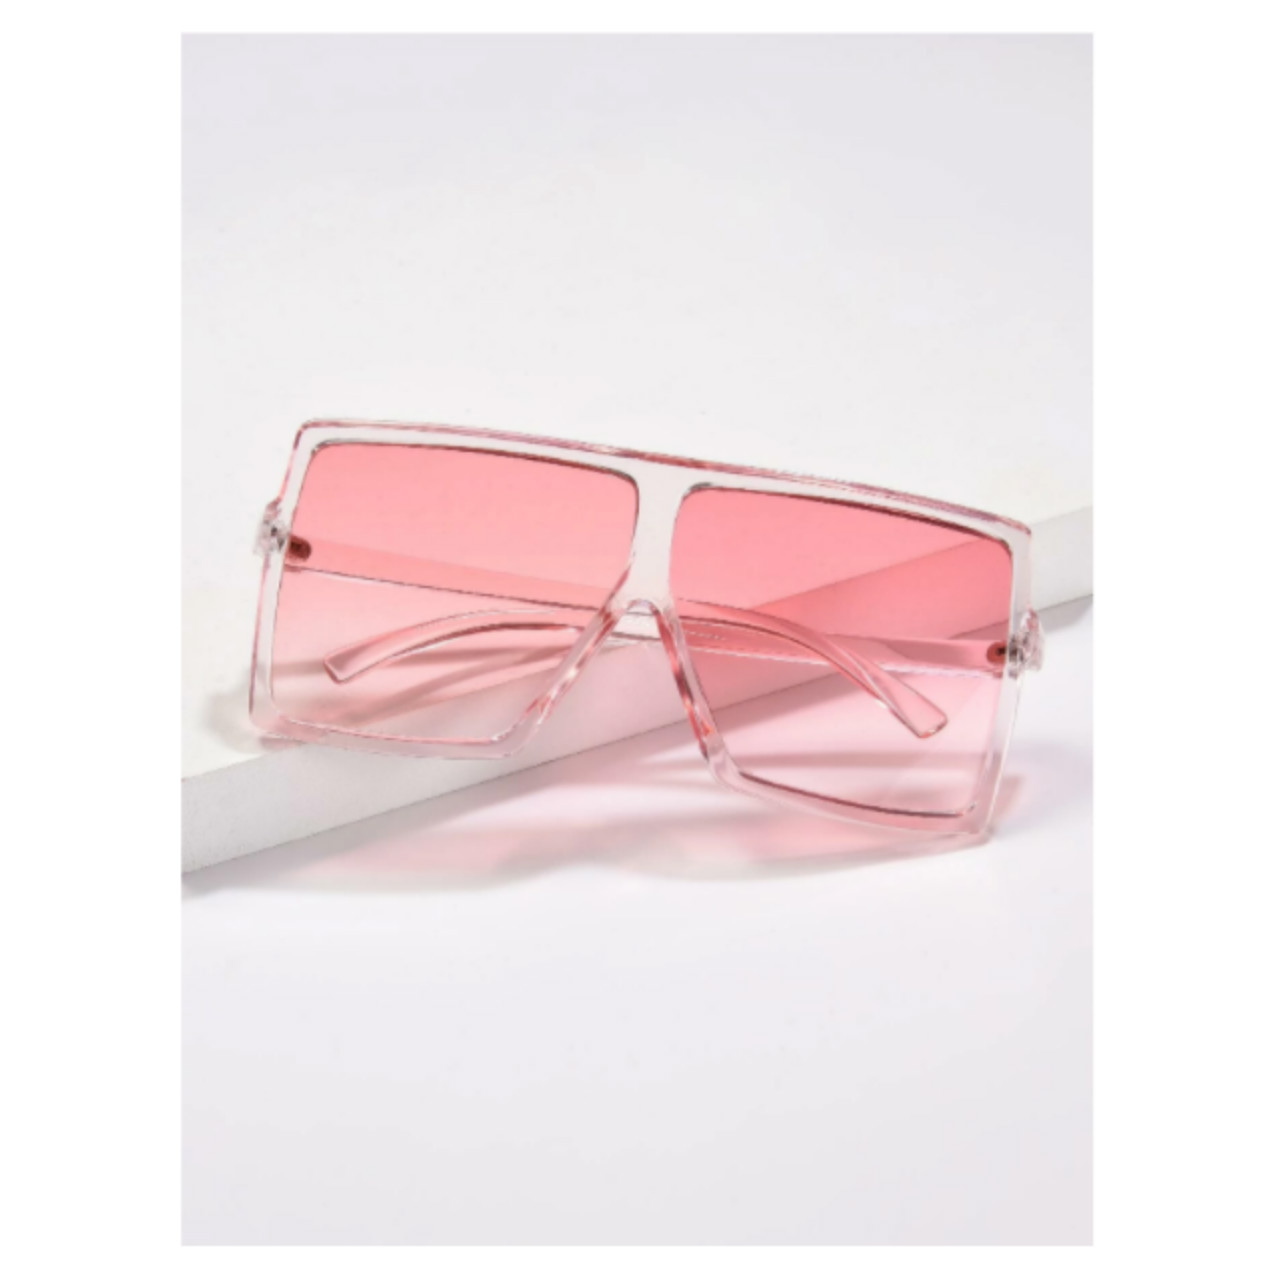 Pink square translucent sunglasses